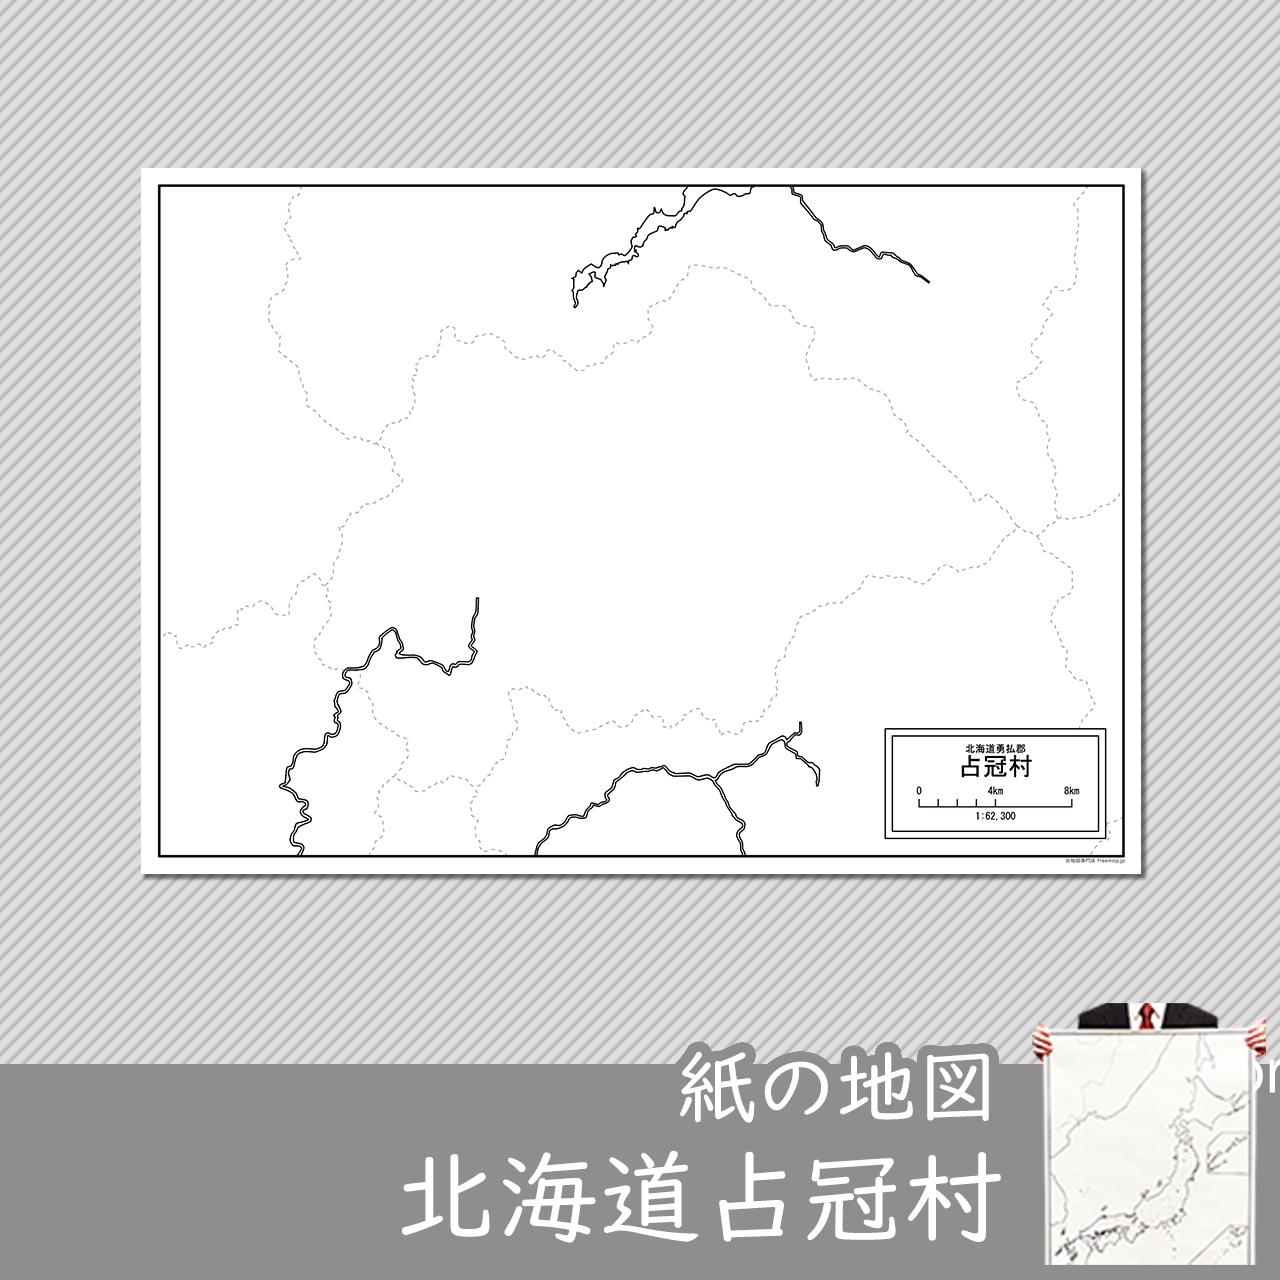 占冠村の紙の白地図のサムネイル